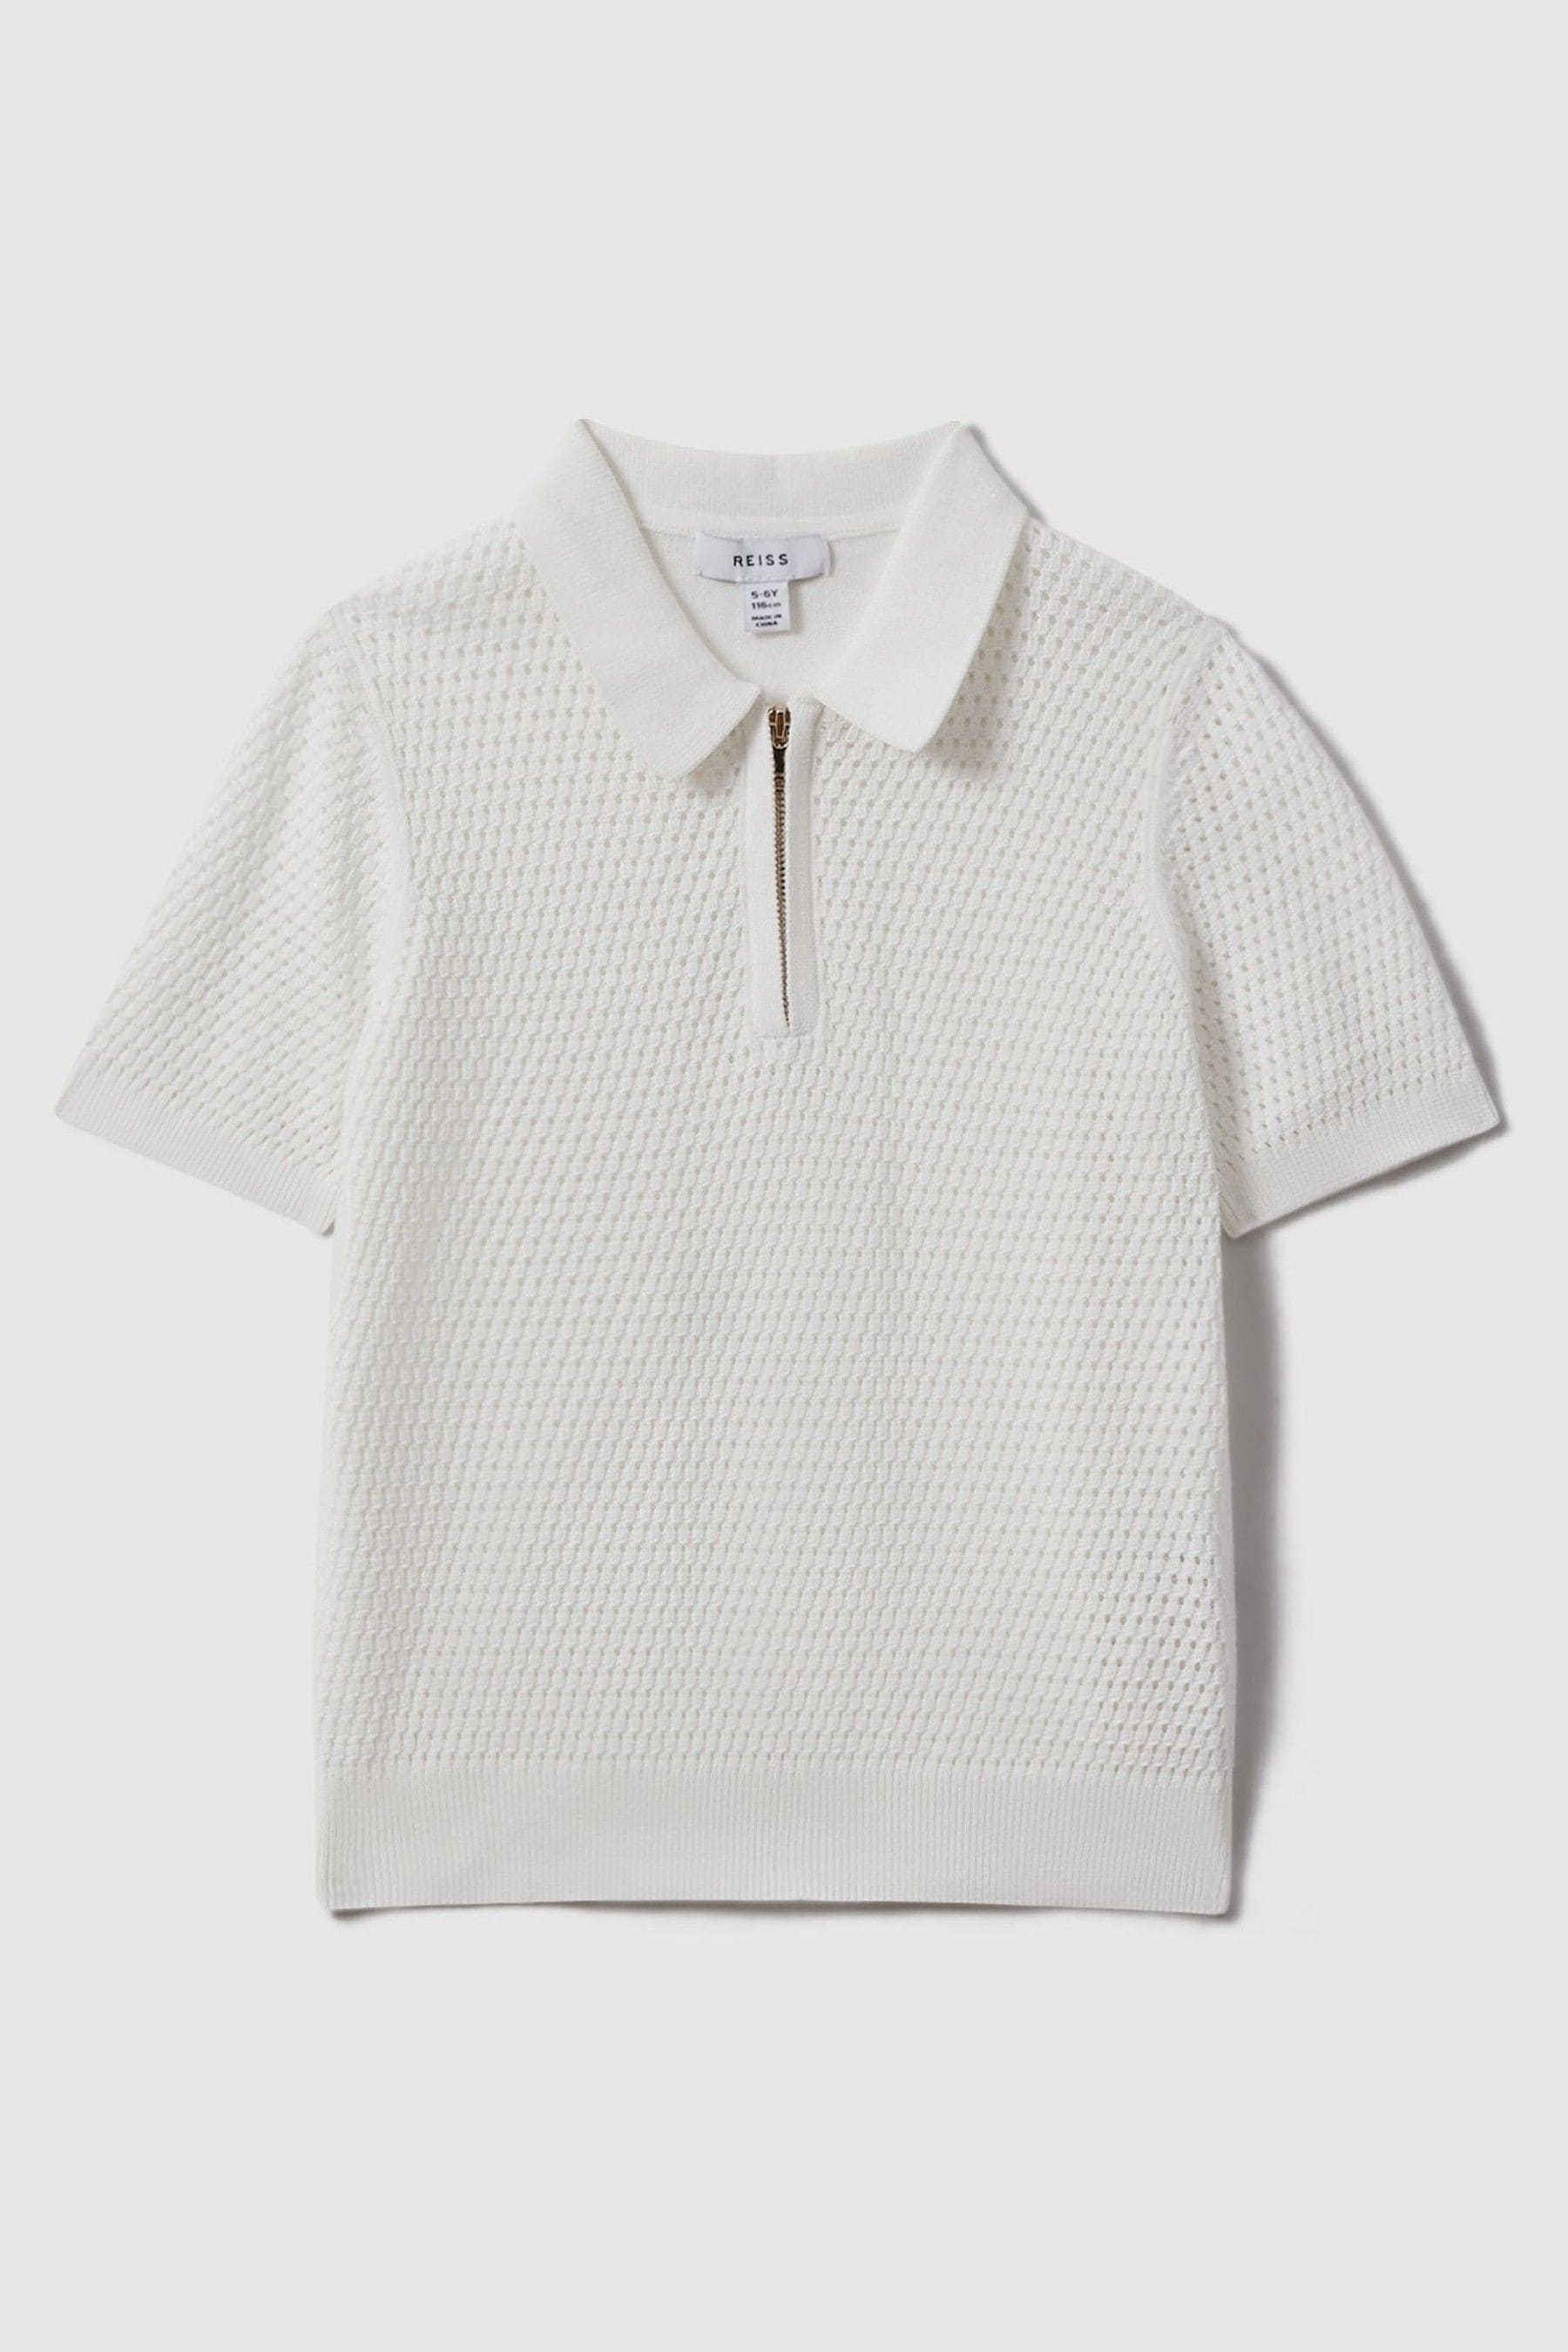 Reiss Kids' Burnham - Optic White Textured Half-zip Polo T-shirt, Uk 13-14 Yrs